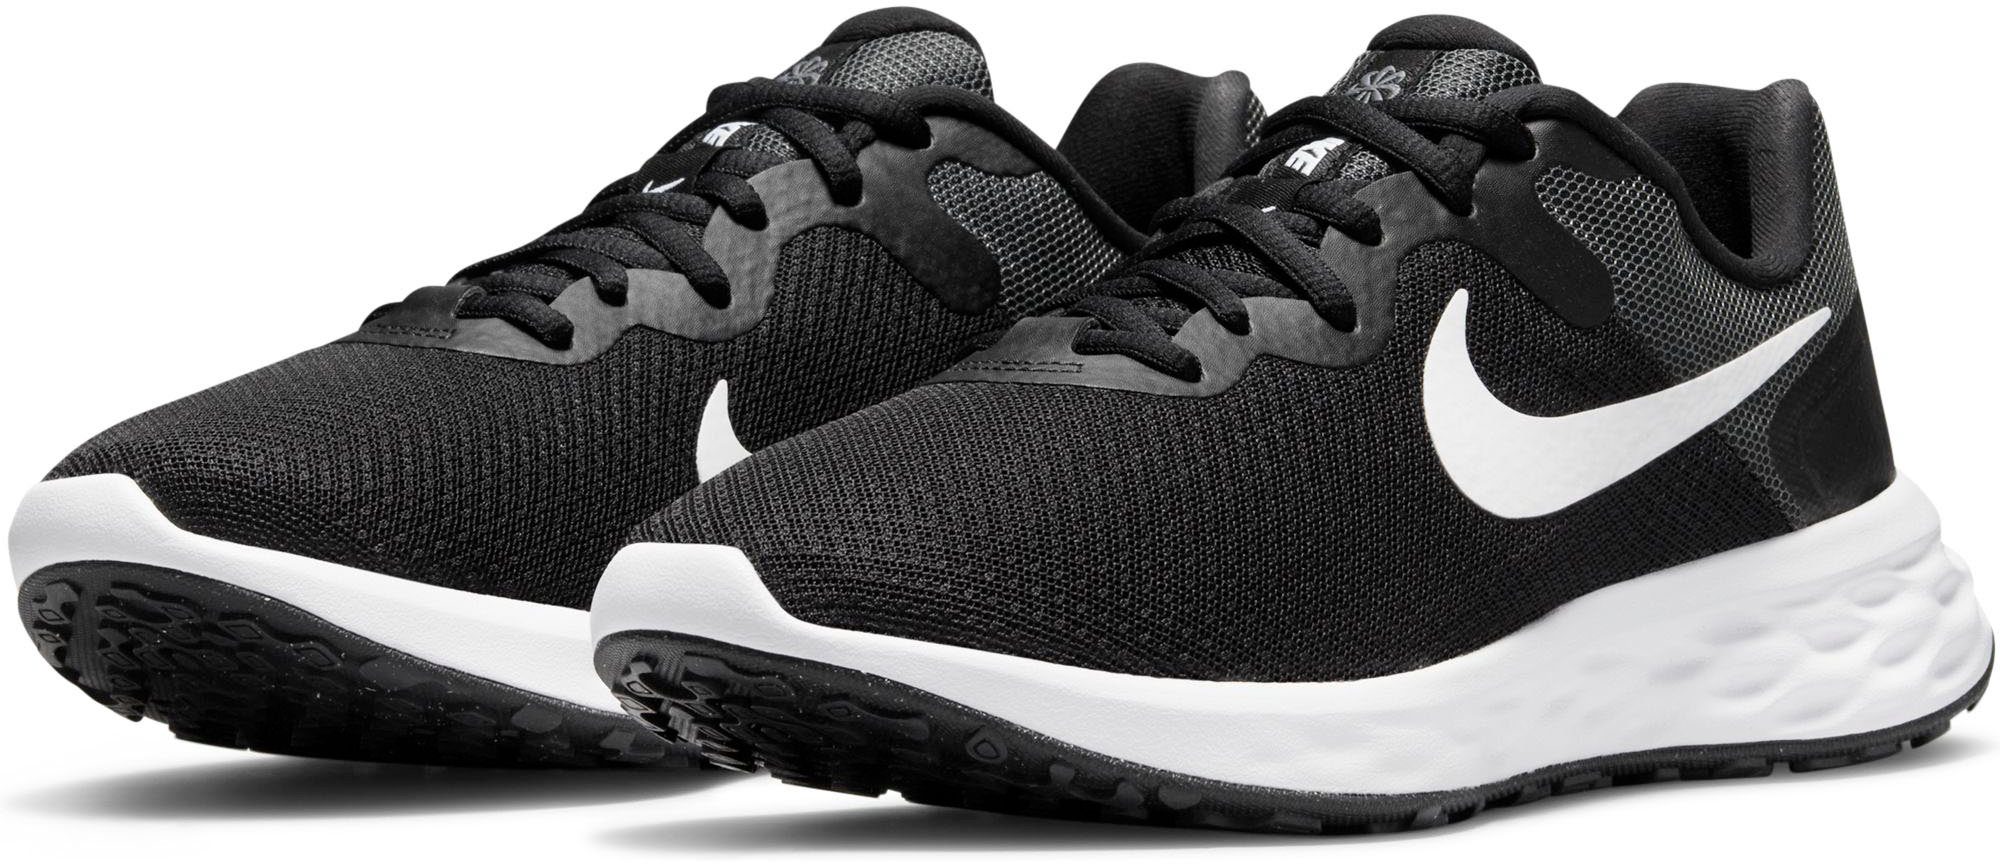 REVOLUTION NATURE NEXT Laufschuh Nike schwarz-weiß 6